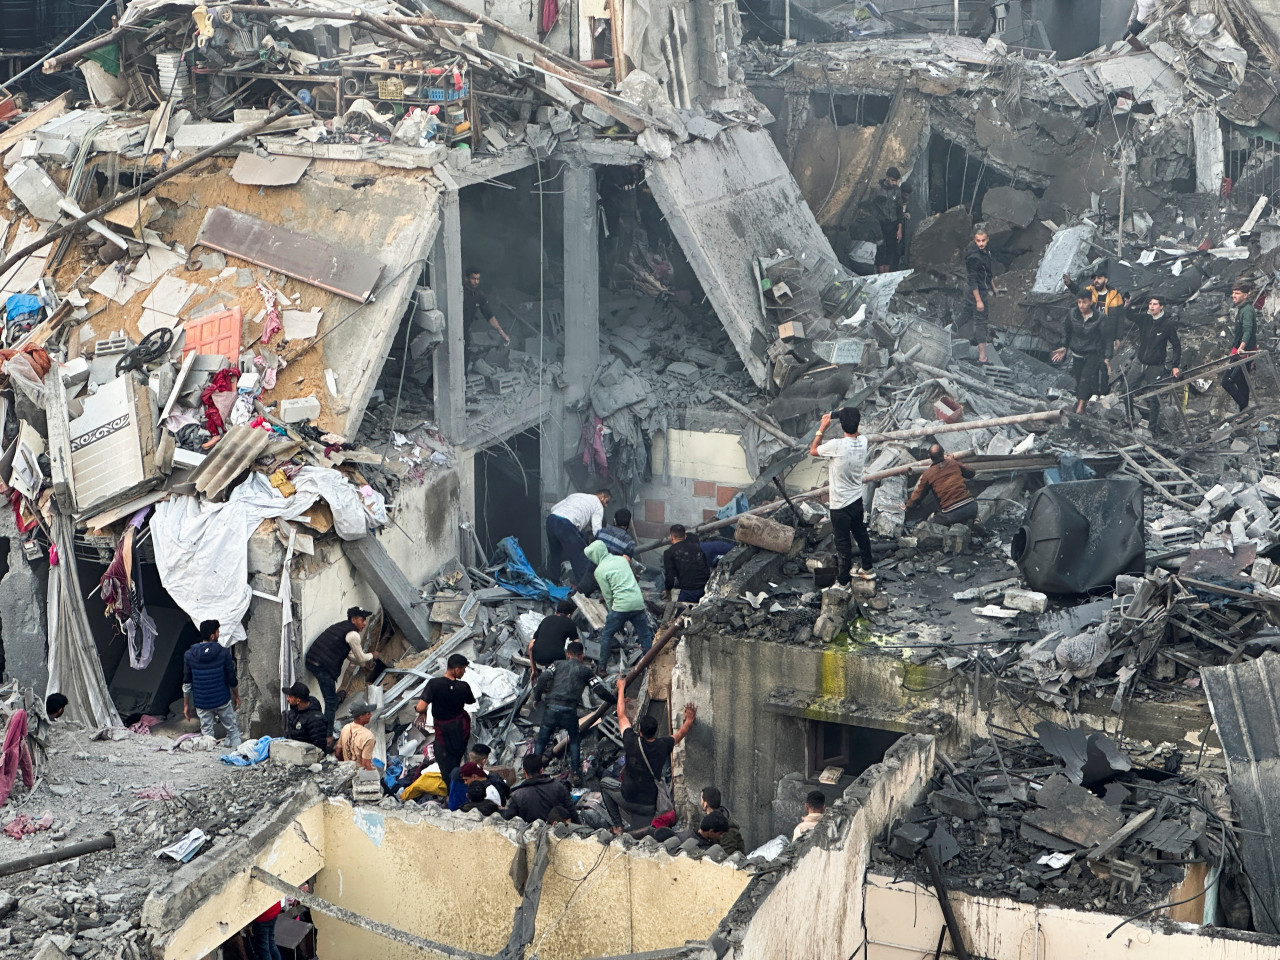 Ataque aéreo israelí contra viviendas y hospitales palestinos. Reuters